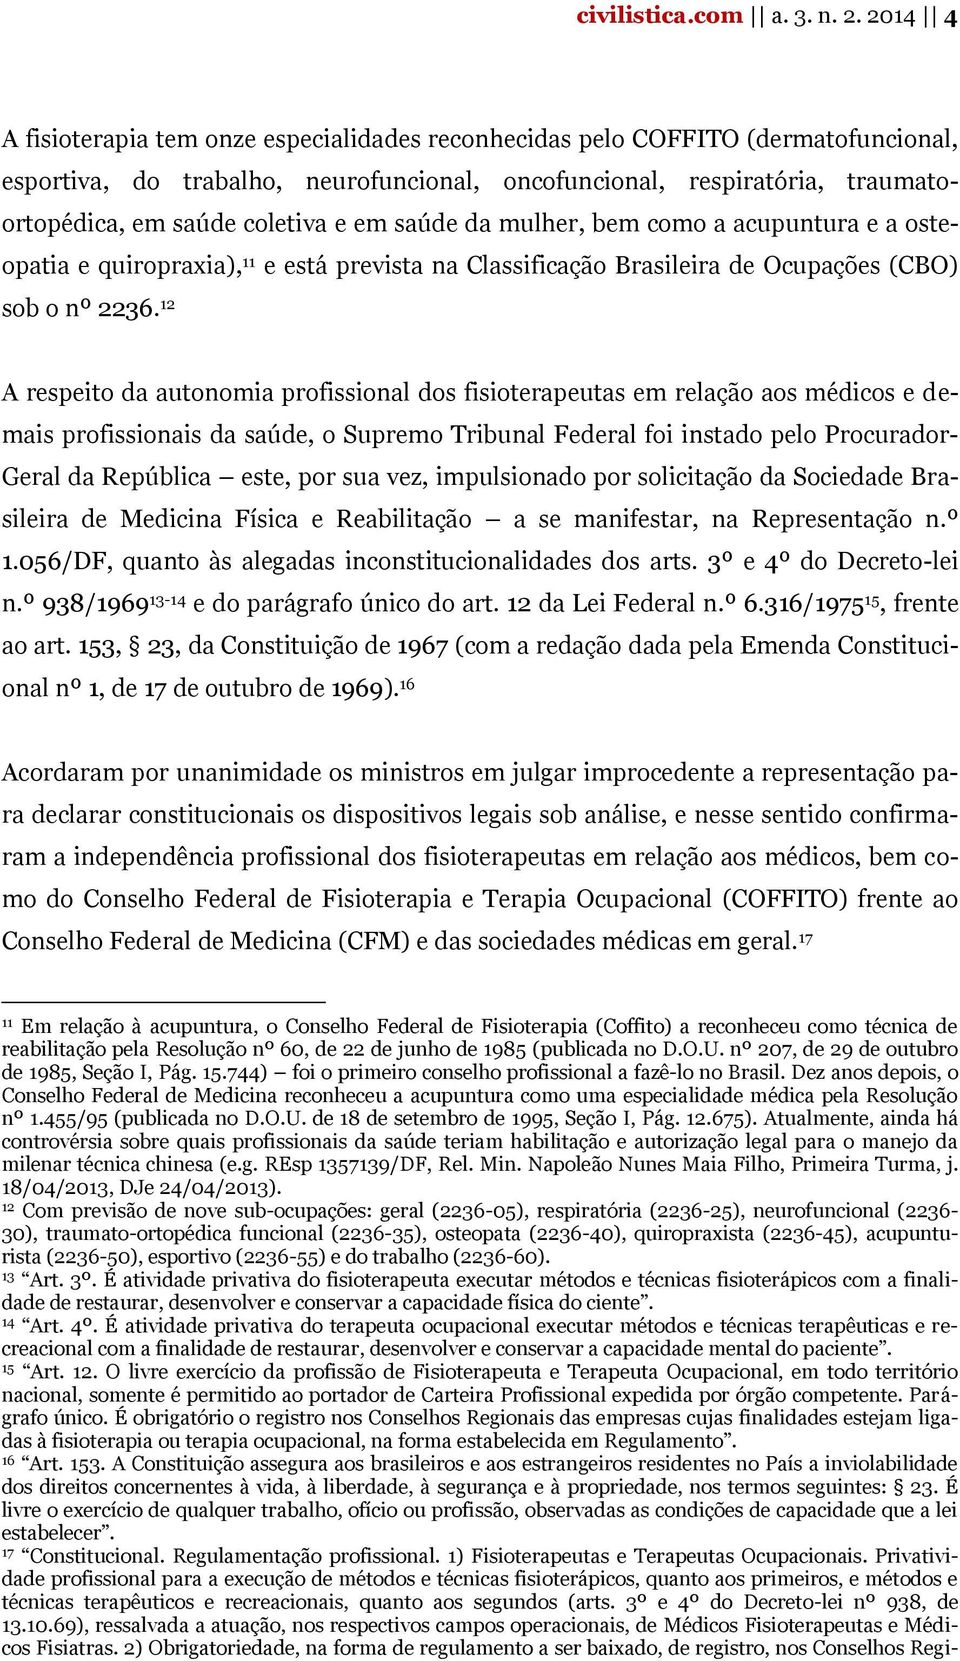 em saúde da mulher, bem como a acupuntura e a osteopatia e quiropraxia), 11 e está prevista na Classificação Brasileira de Ocupações (CBO) sob o nº 2236.